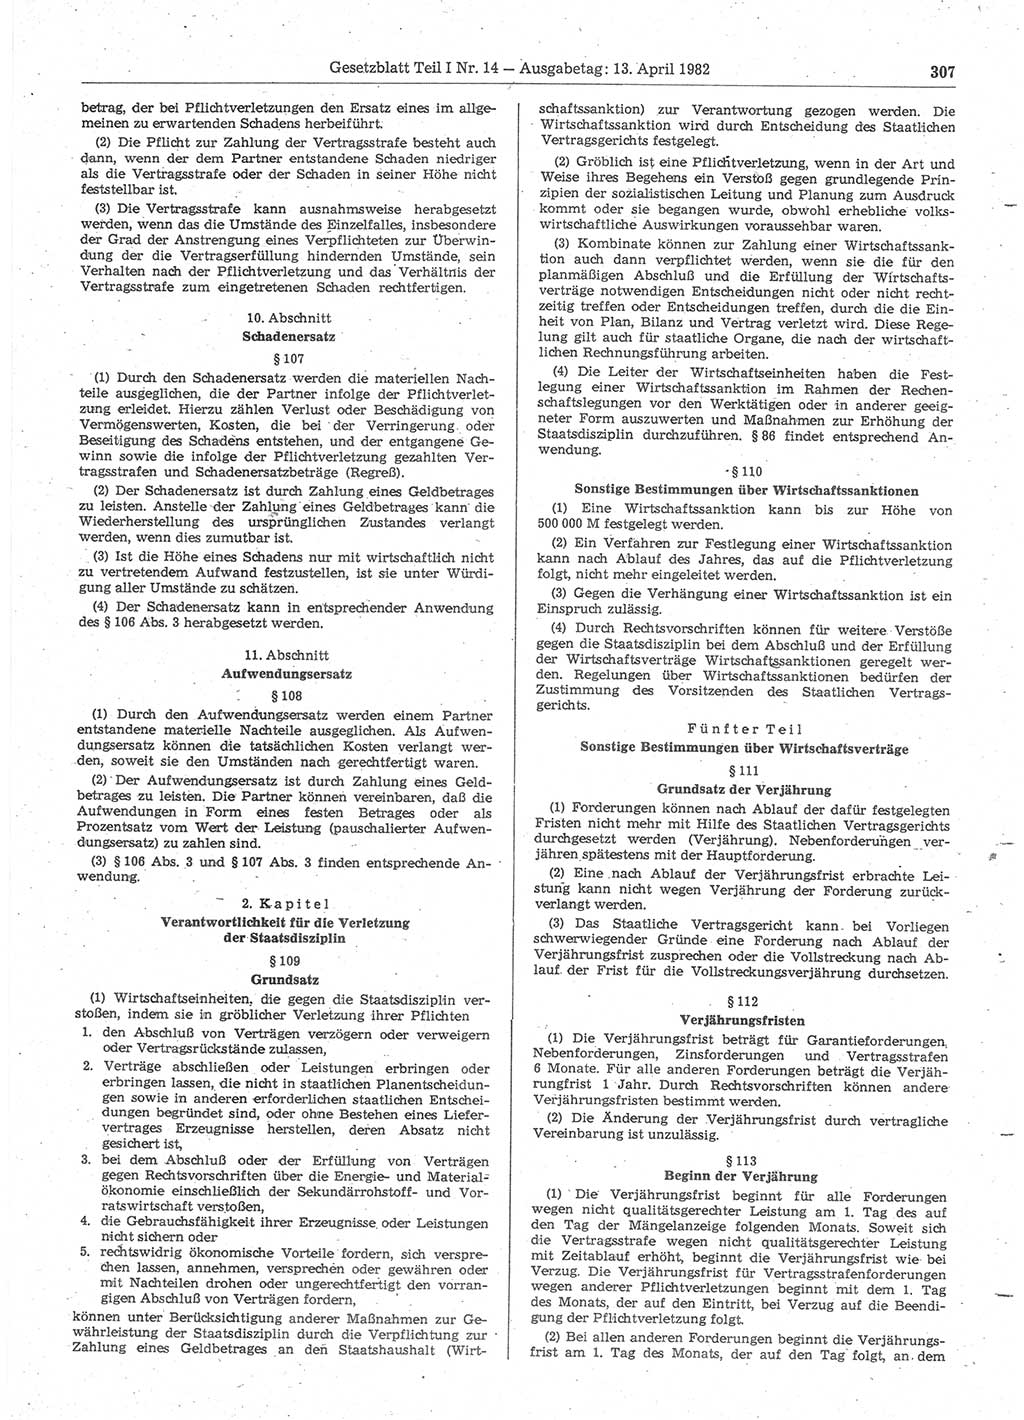 Gesetzblatt (GBl.) der Deutschen Demokratischen Republik (DDR) Teil Ⅰ 1982, Seite 307 (GBl. DDR Ⅰ 1982, S. 307)